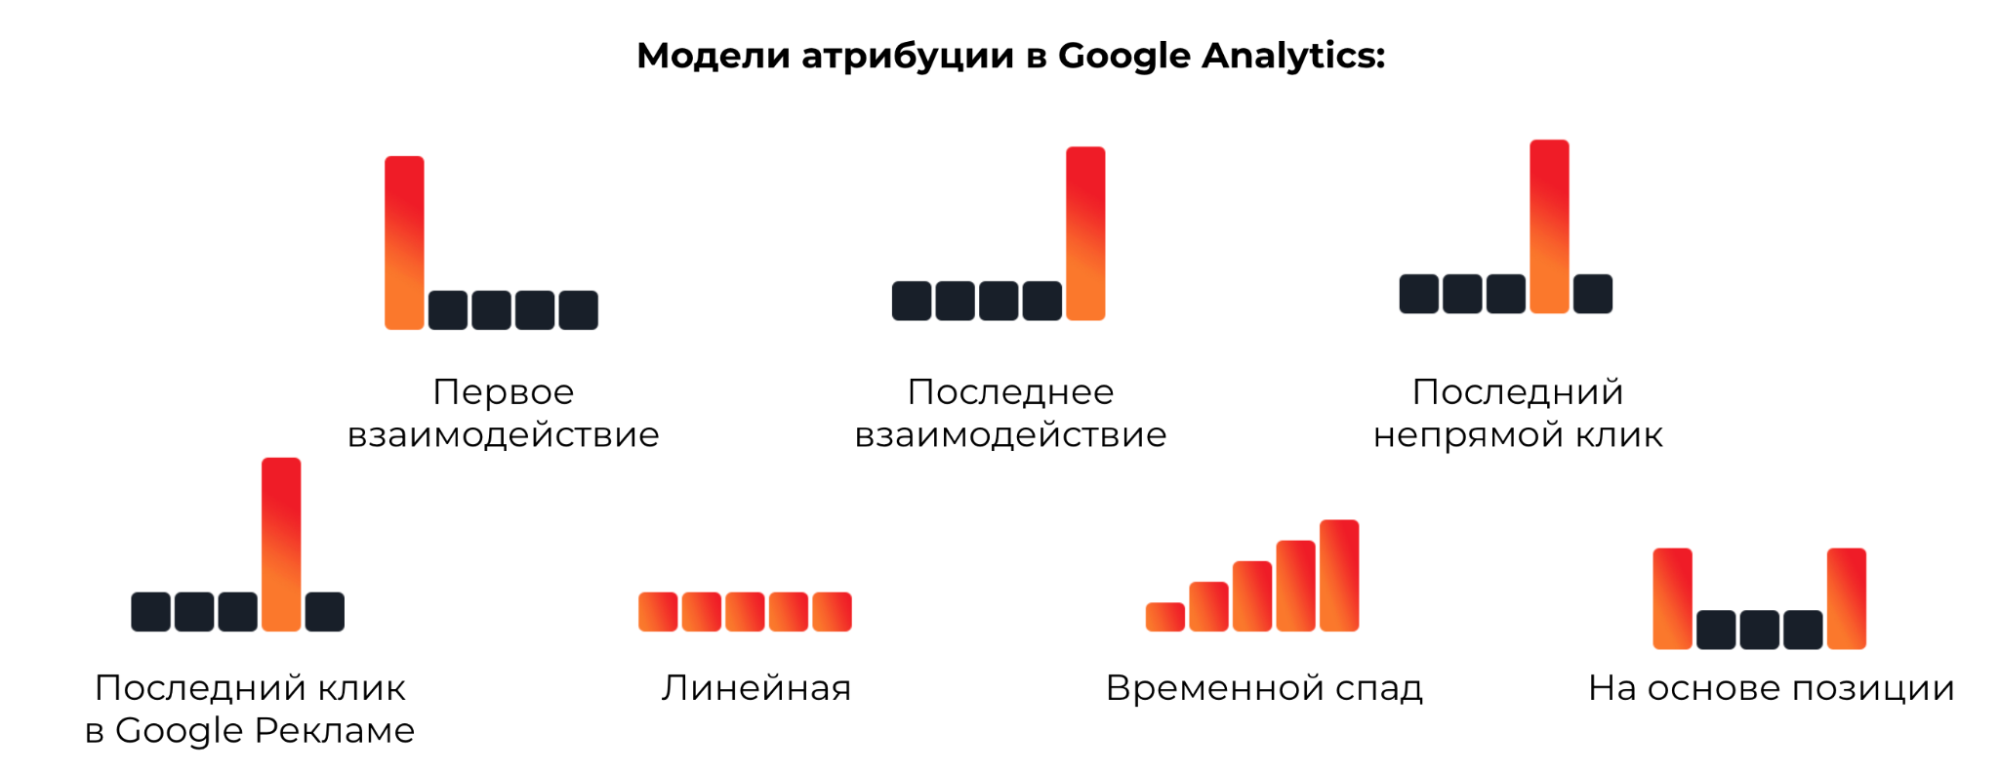 Модели атрибуции в Google Analytics.